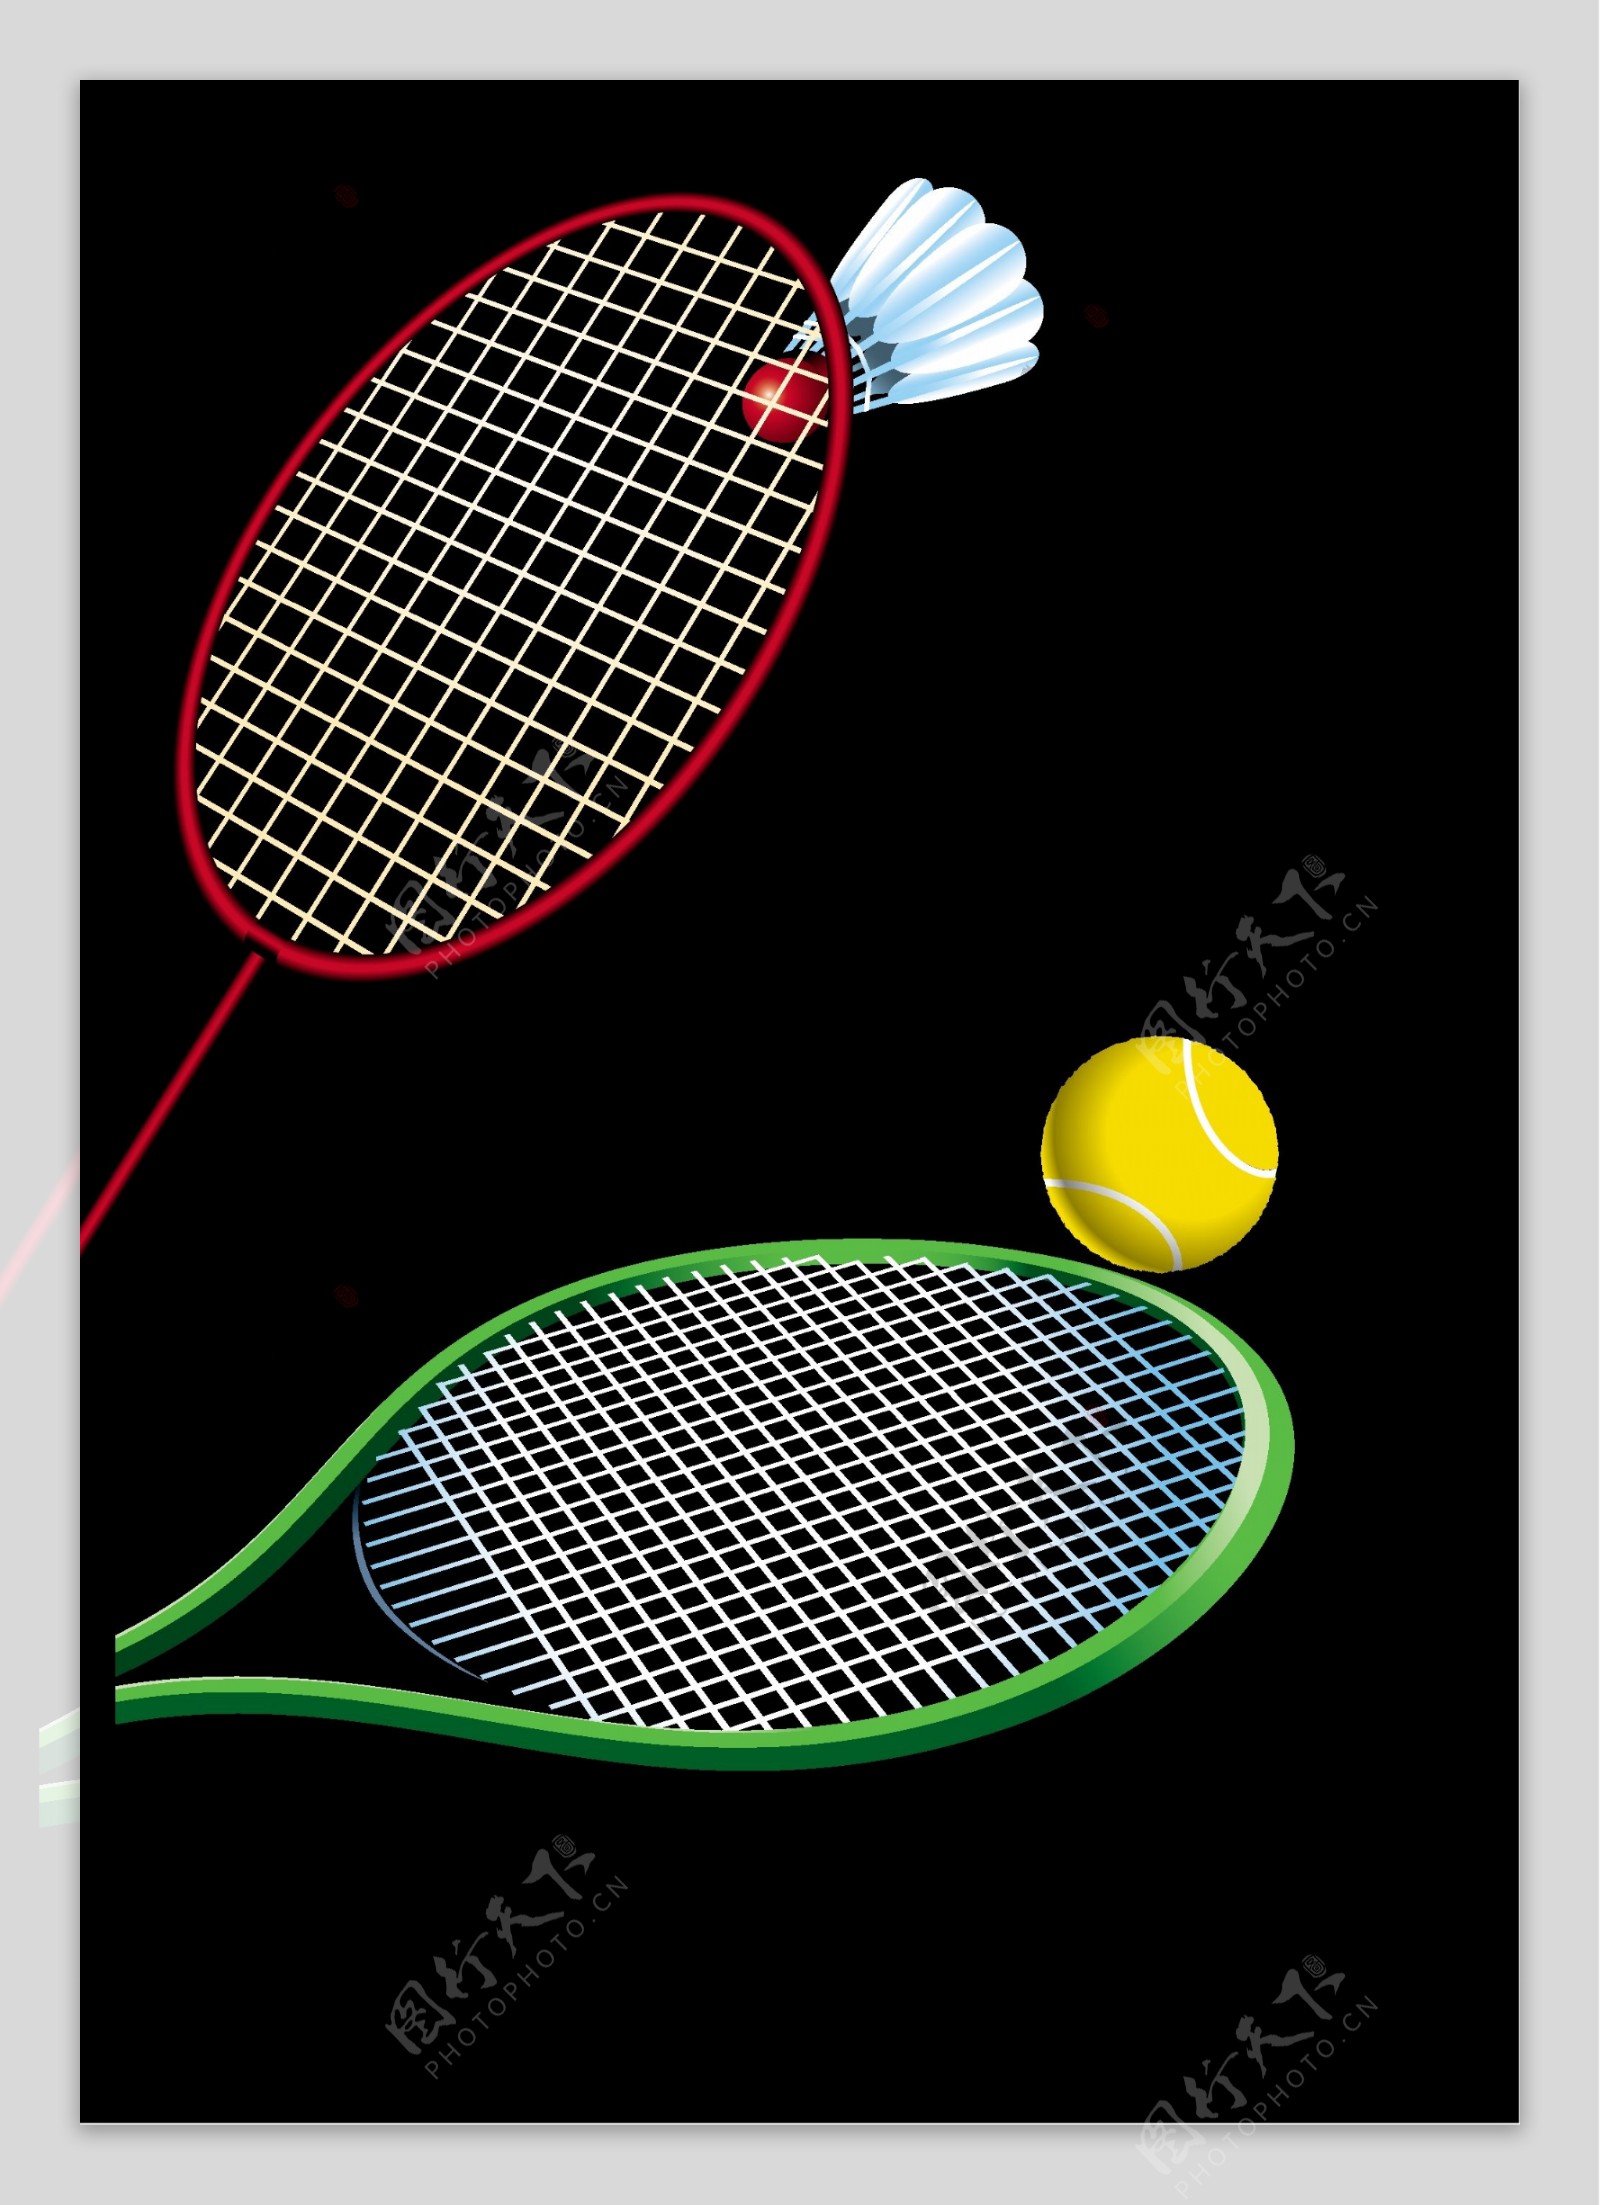 网球拍羽毛球拍矢量图